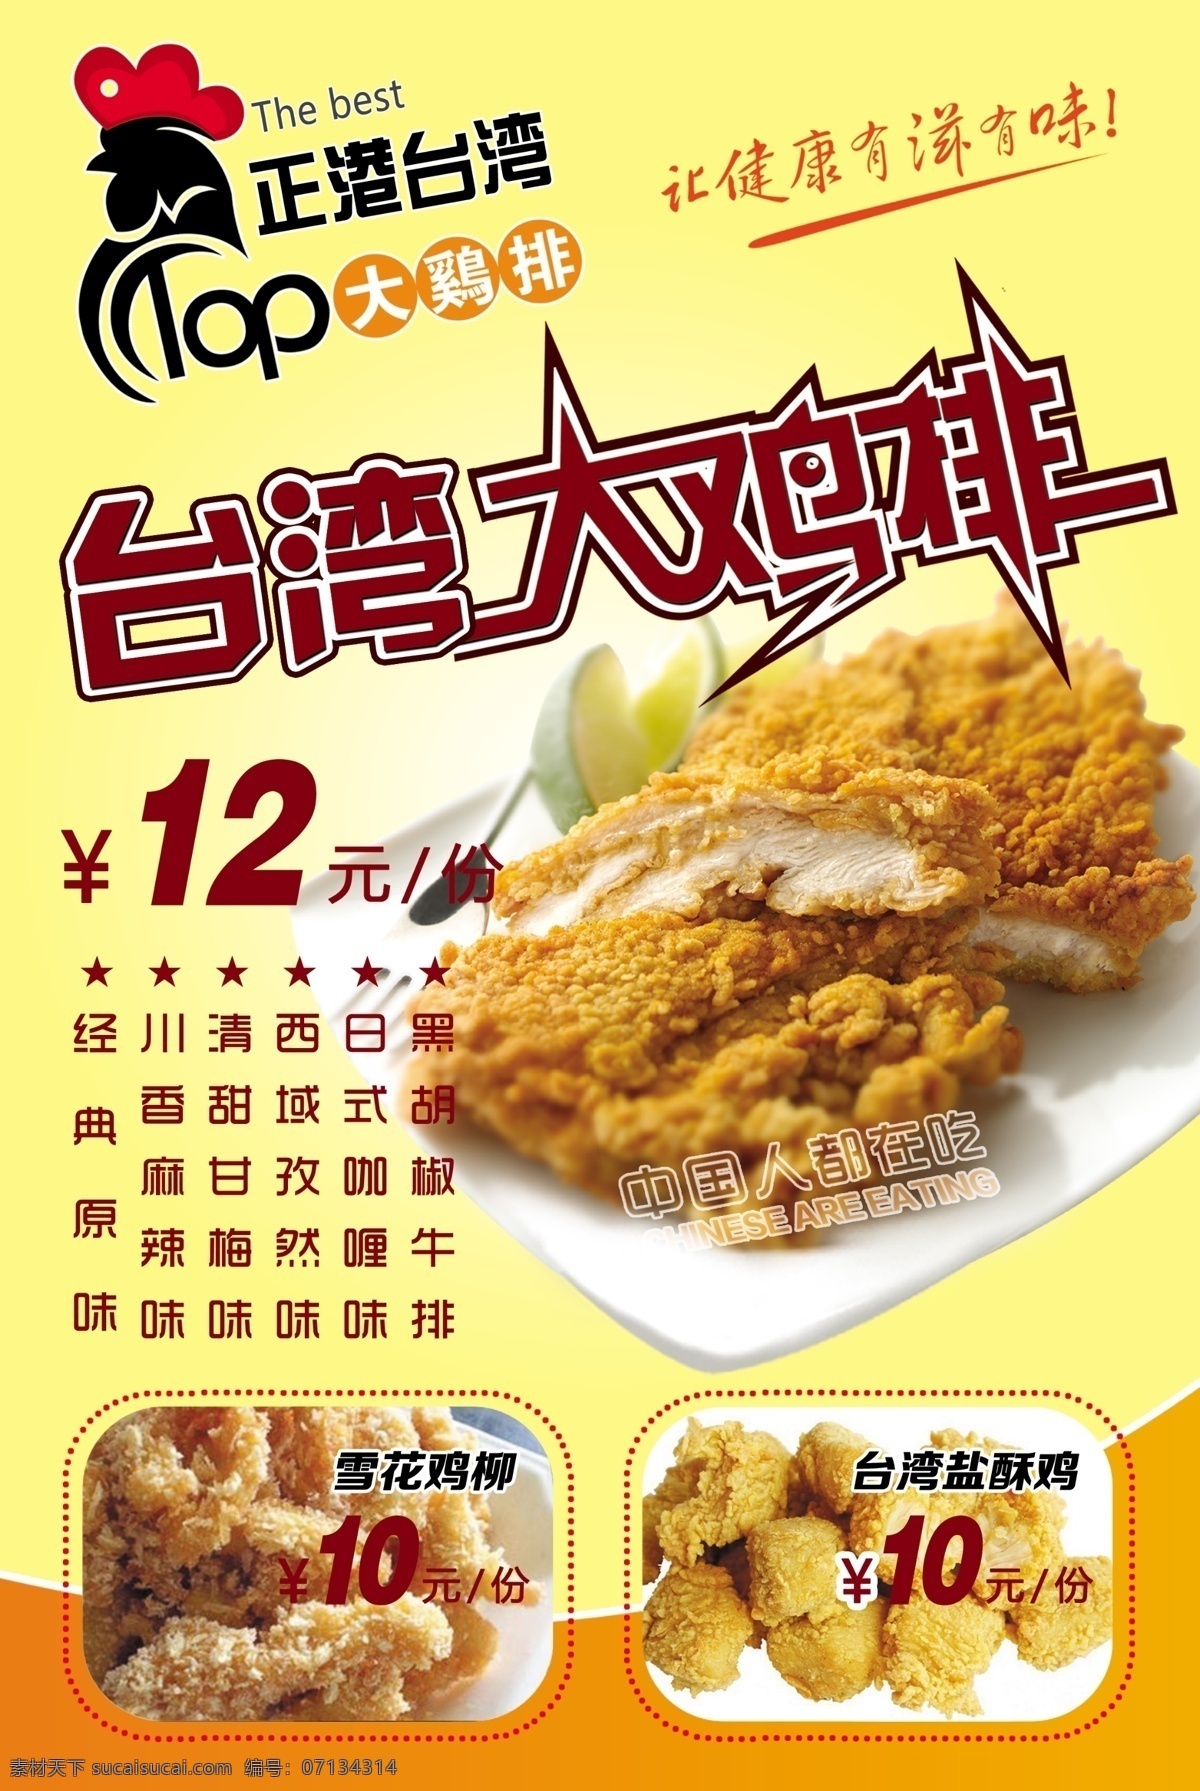 台湾大鸡排 鸡排图片 雪花鸡柳 台湾盐酥鸡 鸡排海报